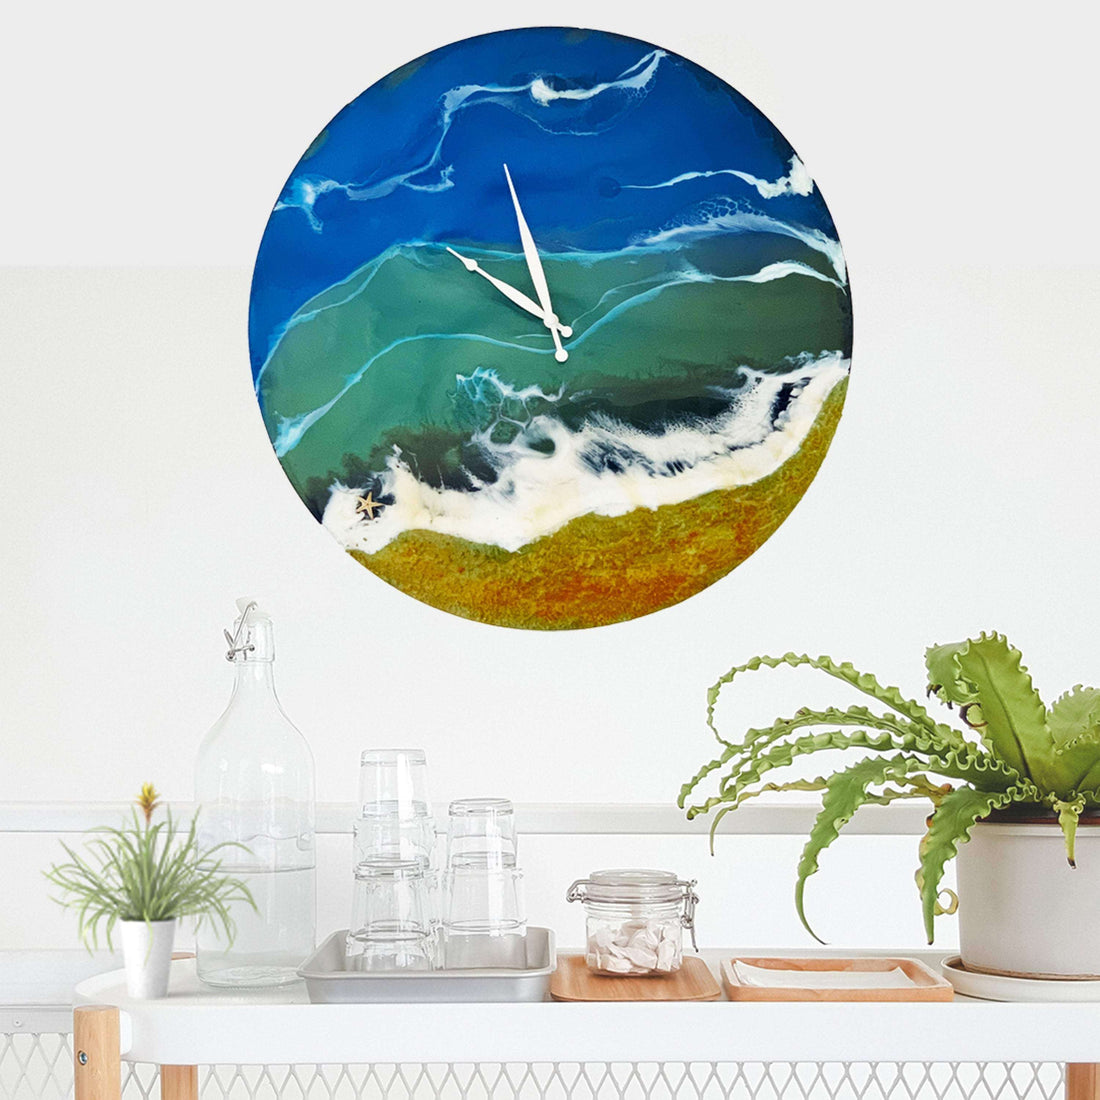 beach themed clocks uk, wooden clock , seaside mantel clock, resin wall art uk, resin beach clock, ocean wall clock